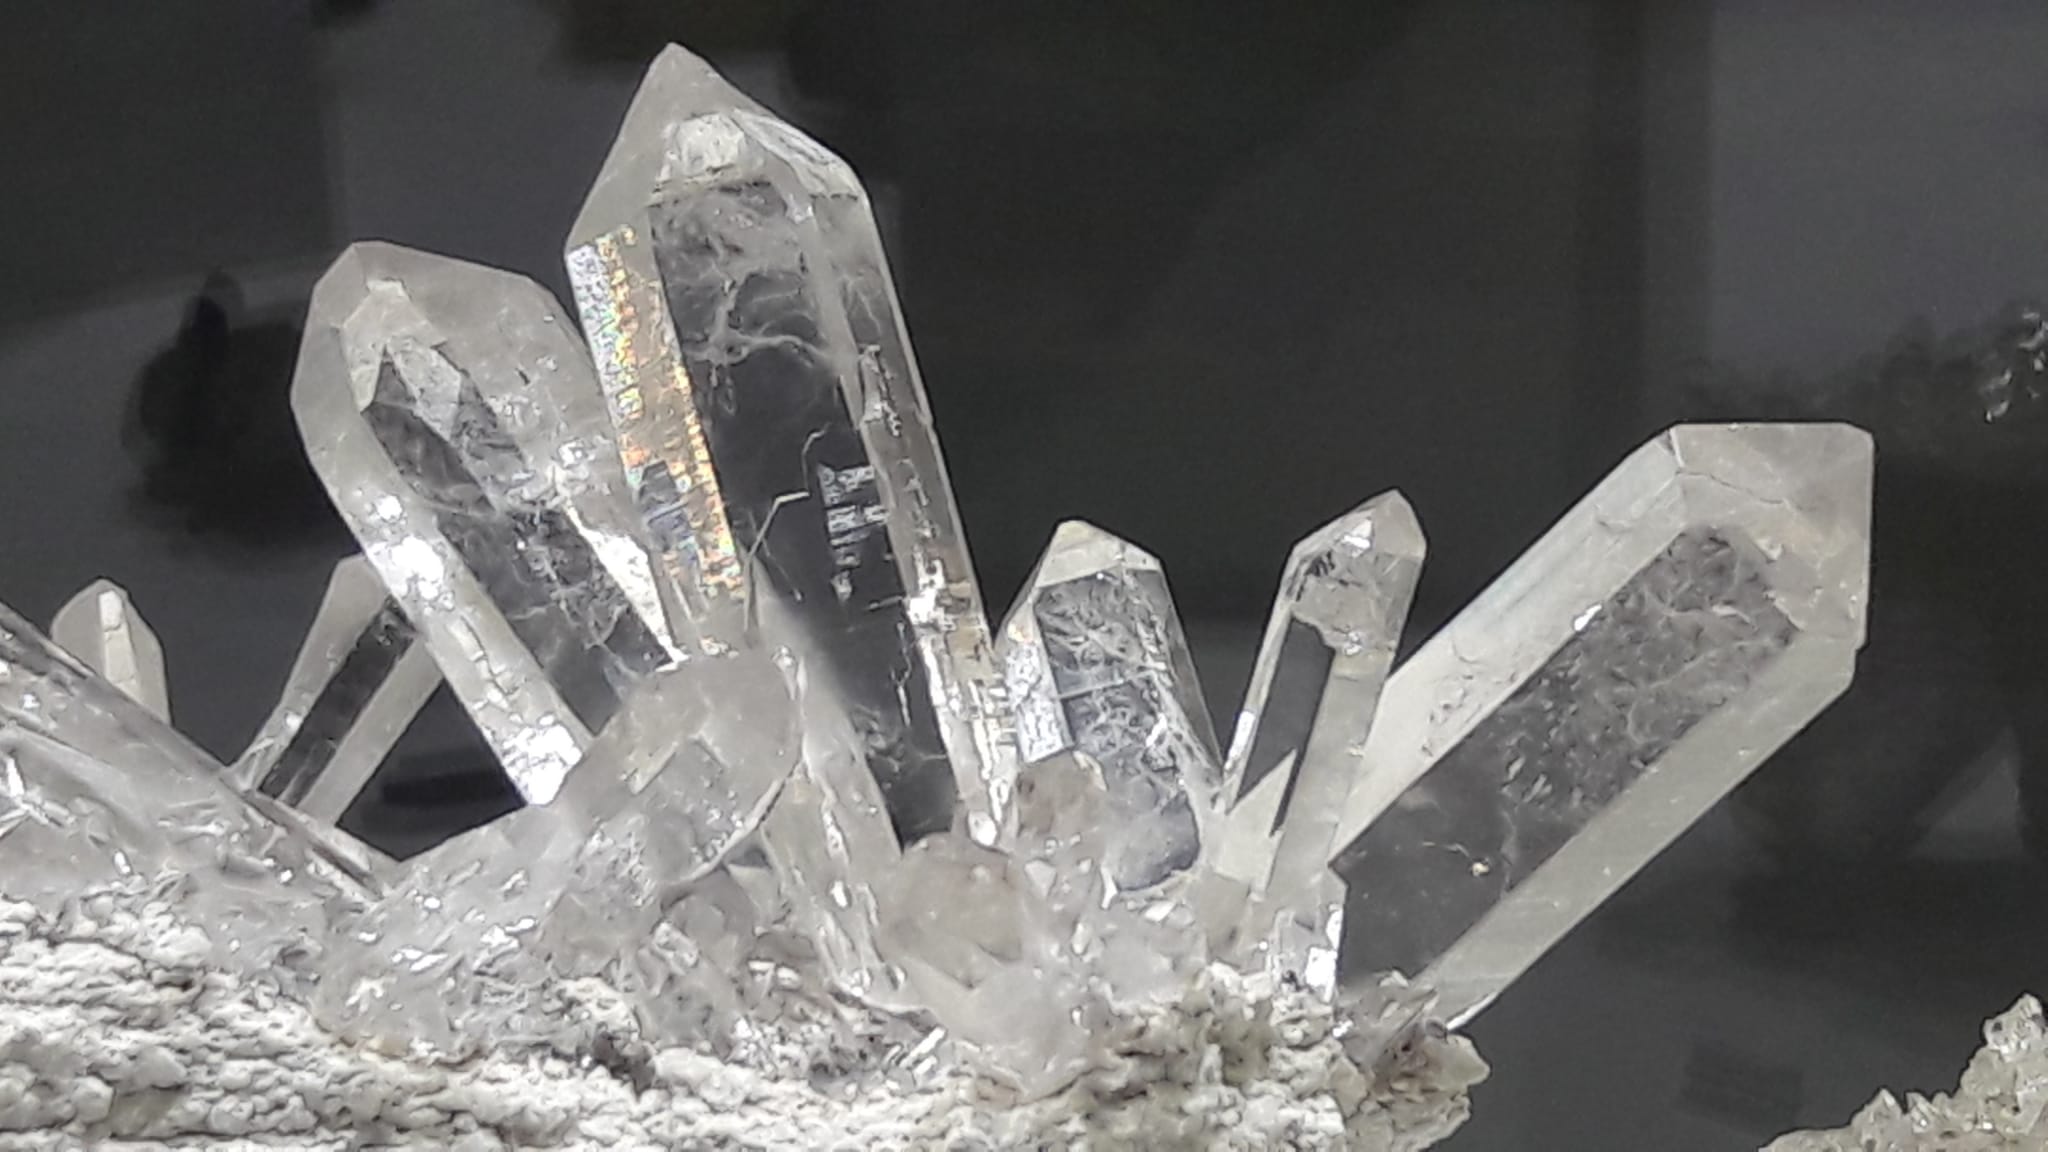 Kristallgruppen der extra Klasse im faszinierend schönen Schweizer Strahler Museum Schmidt im Wallis